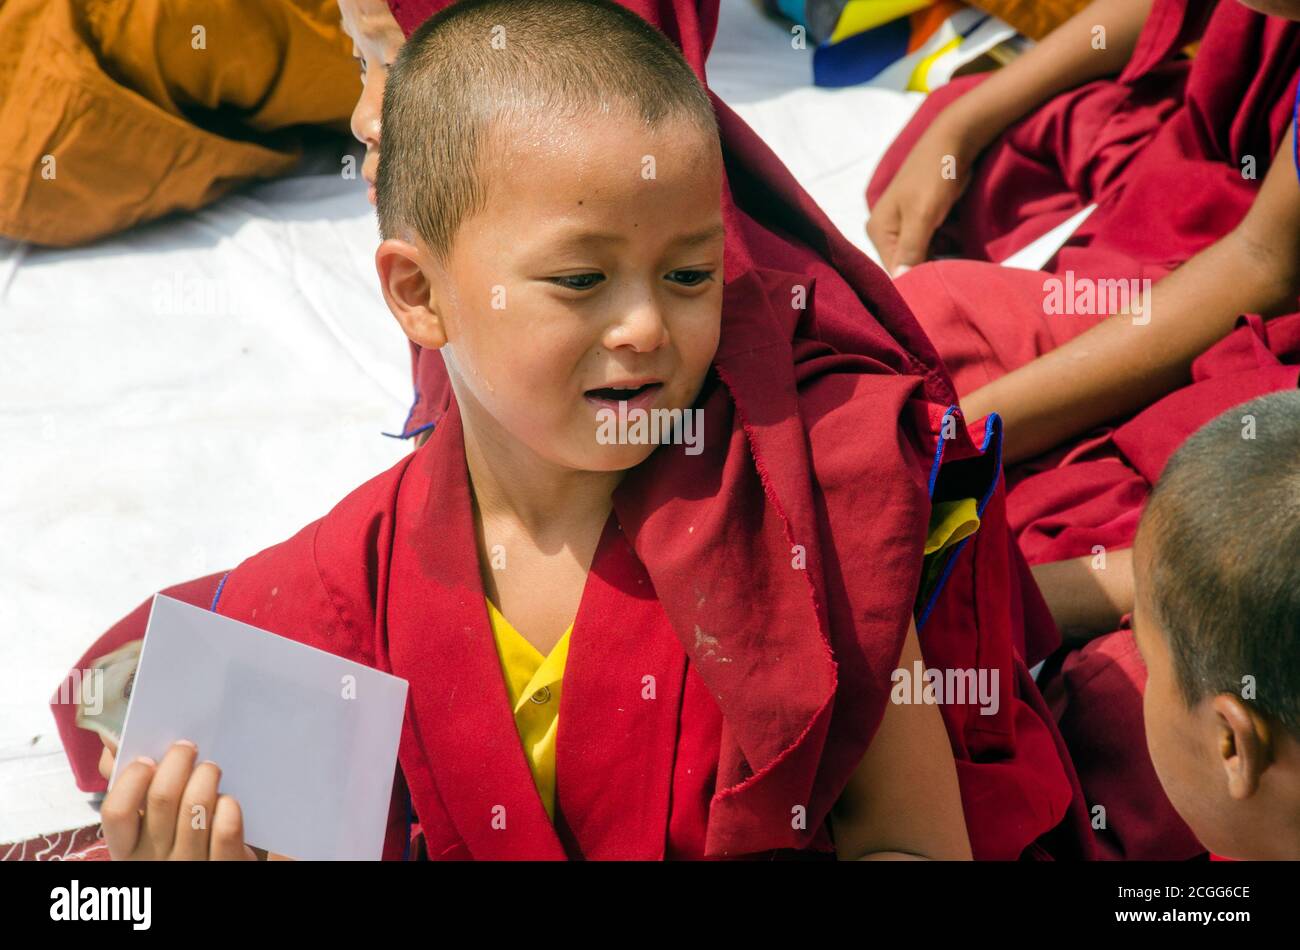 child tibetan lamas gatherd during prayer time at bodh gaya bihar india Stock Photo